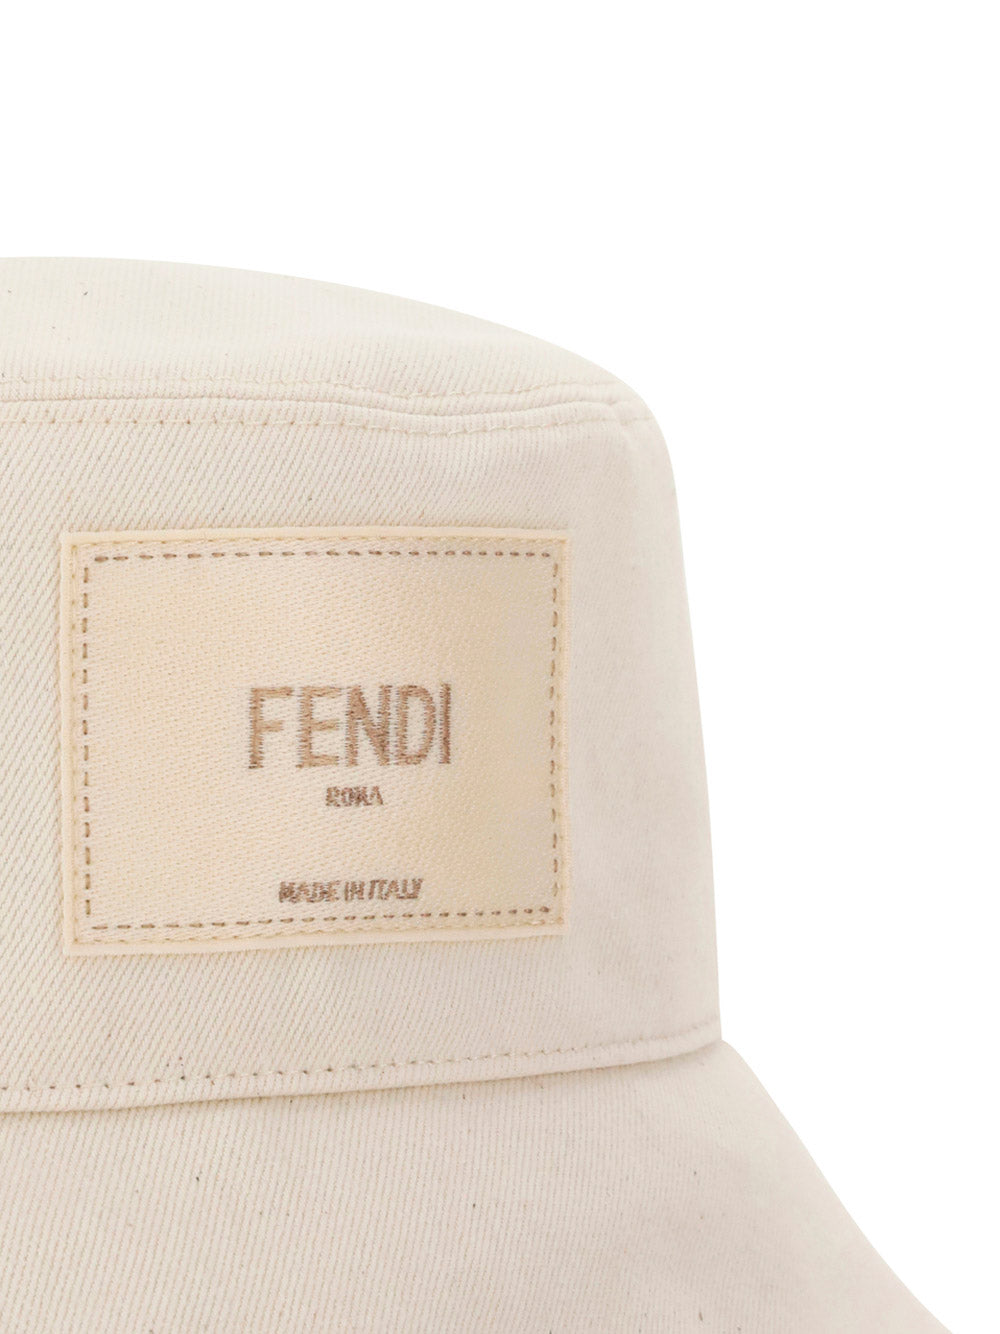 Fendi Men's Denim Bucket Hat